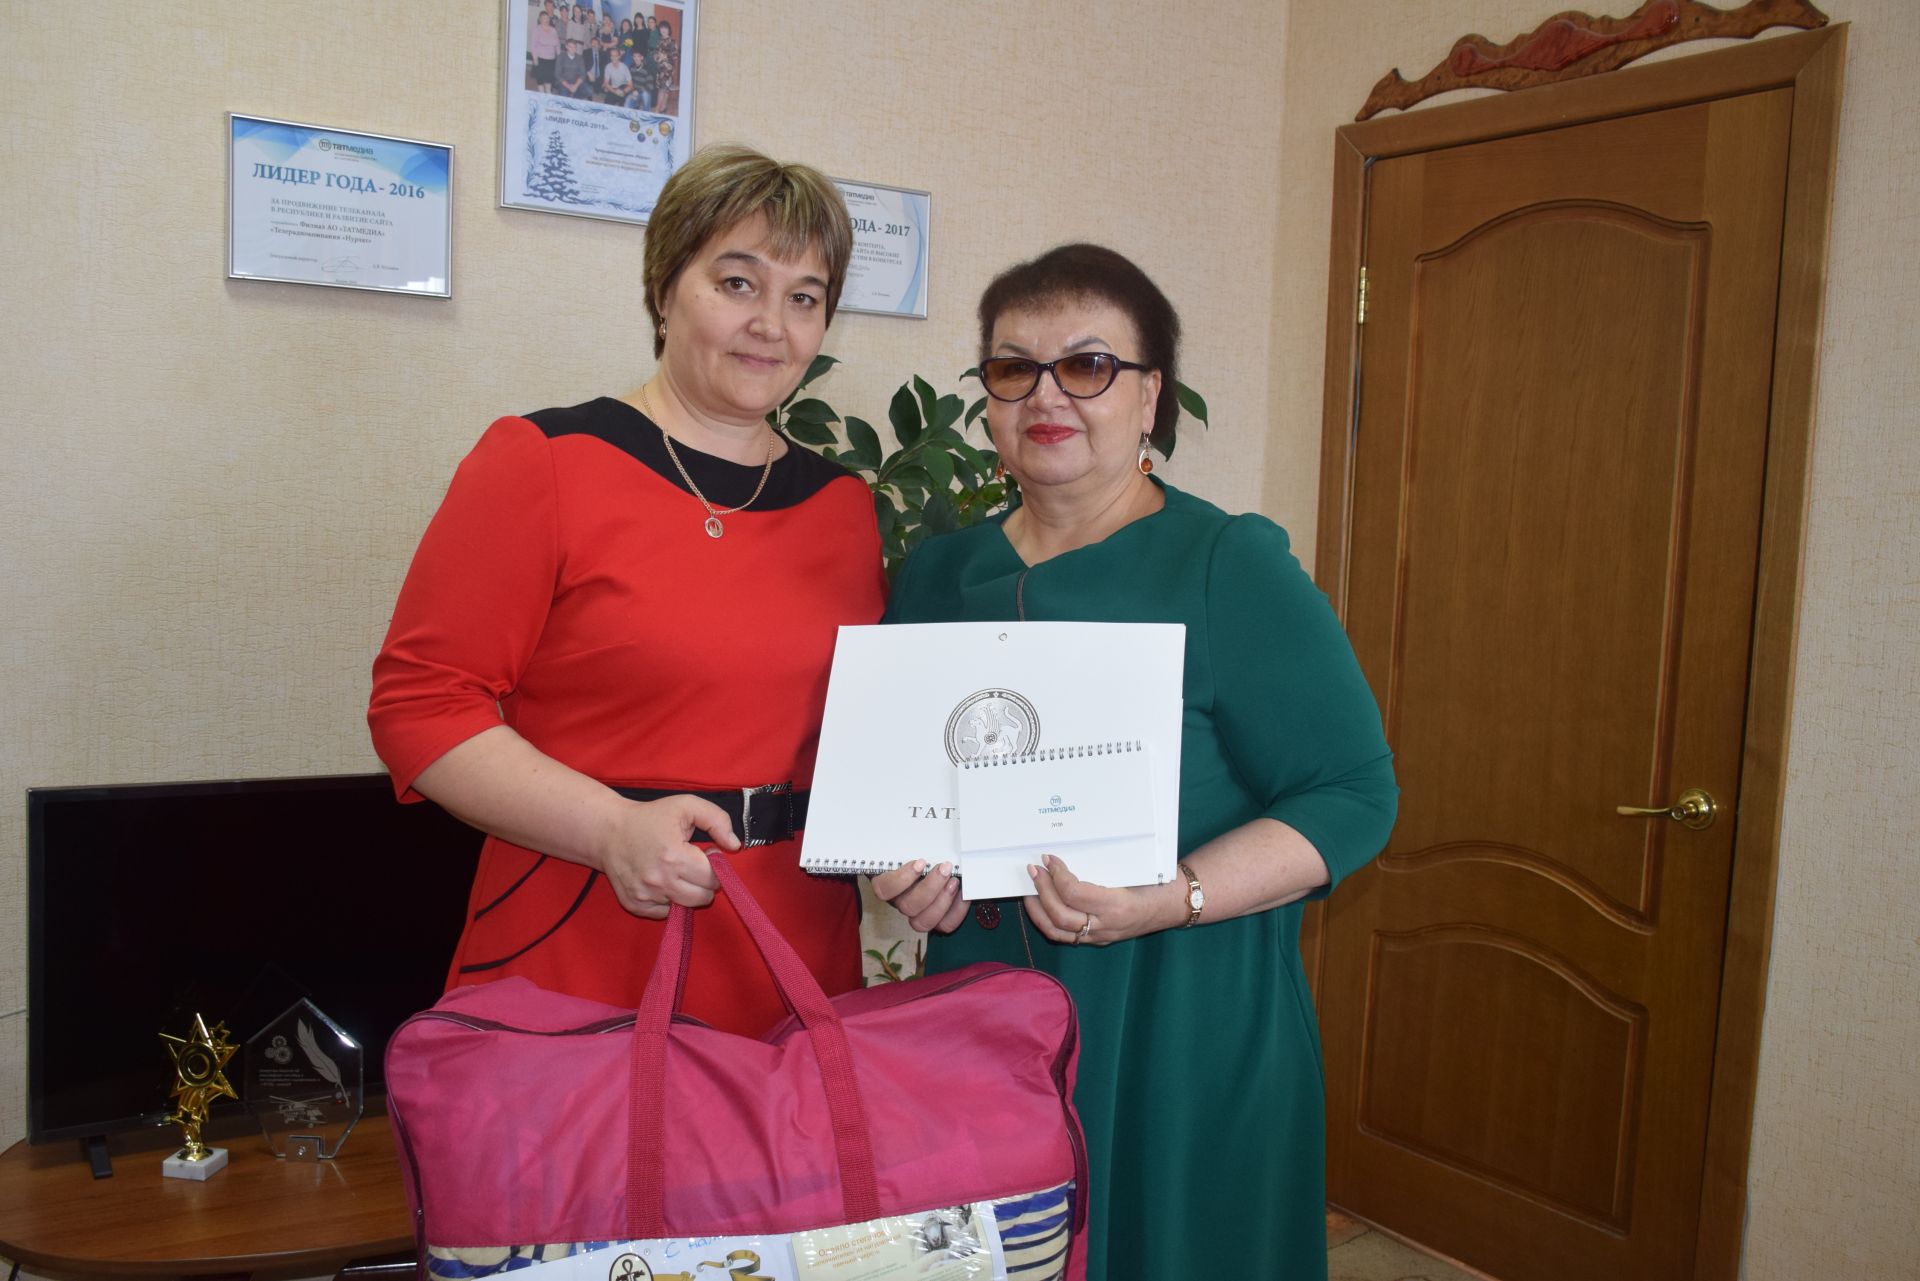 Активные подписчики из Нурлатского района получили &nbsp;ценные подарки от АО "Татмедиа"